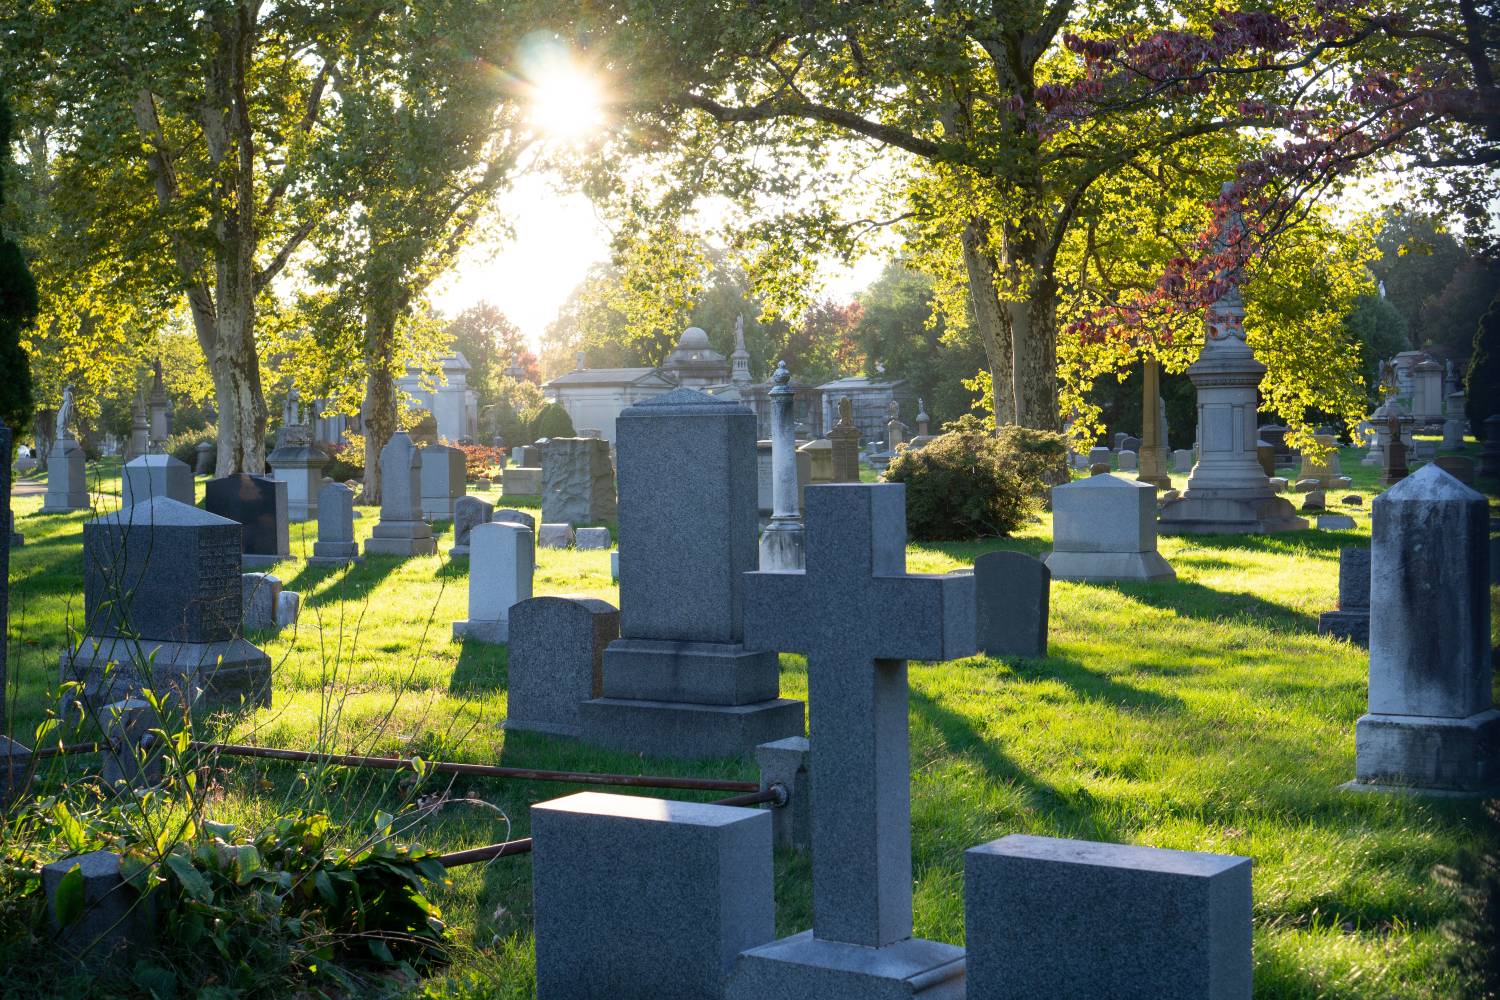 Köpa gravsten Bålsta gravstenstjänst